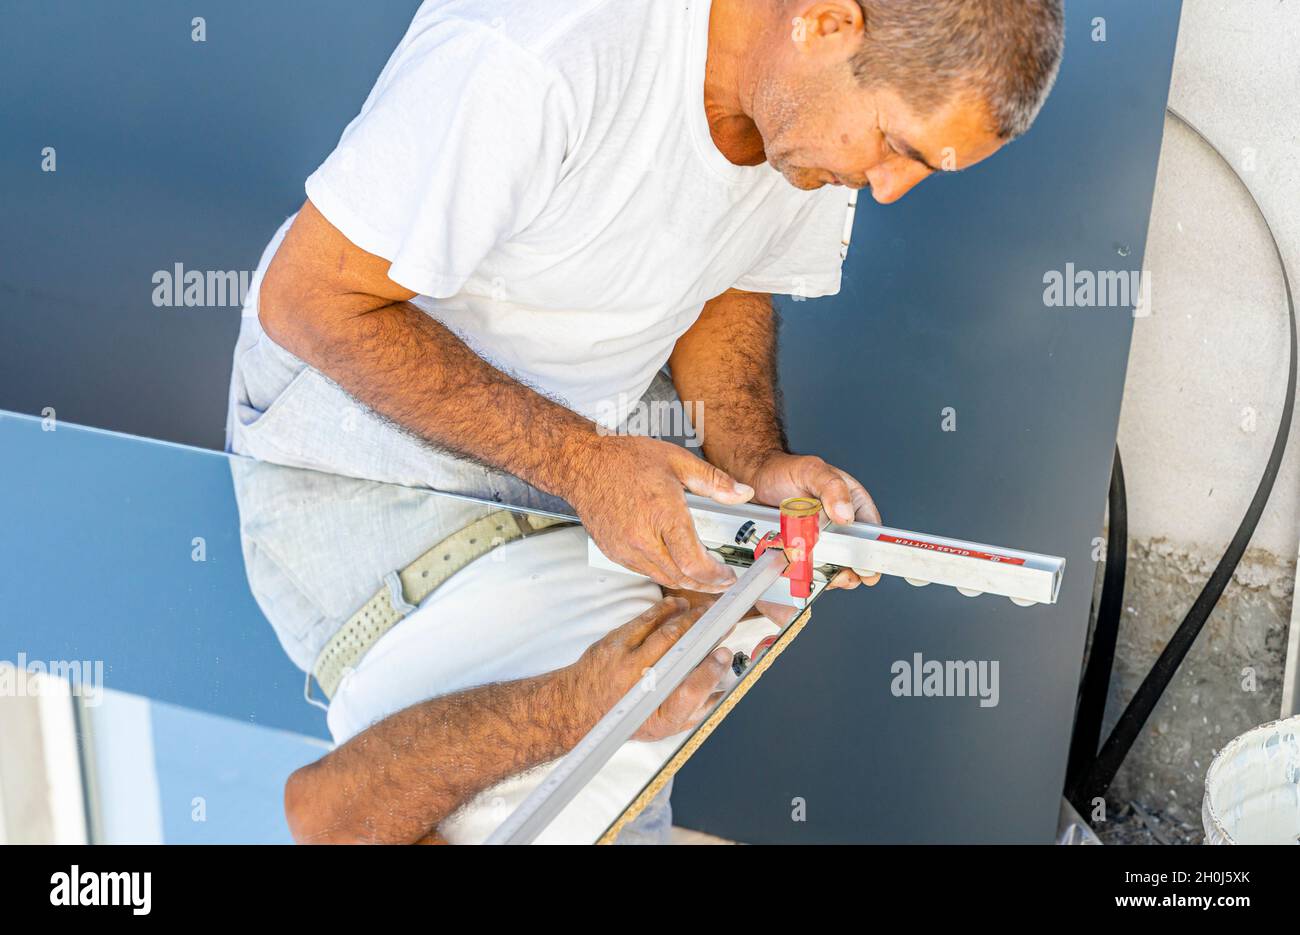 Ein Mann, der Spiegelglas mit Glasschneider schneidet, um es in der lokalen Möbelproduktion zu verwenden Stockfoto